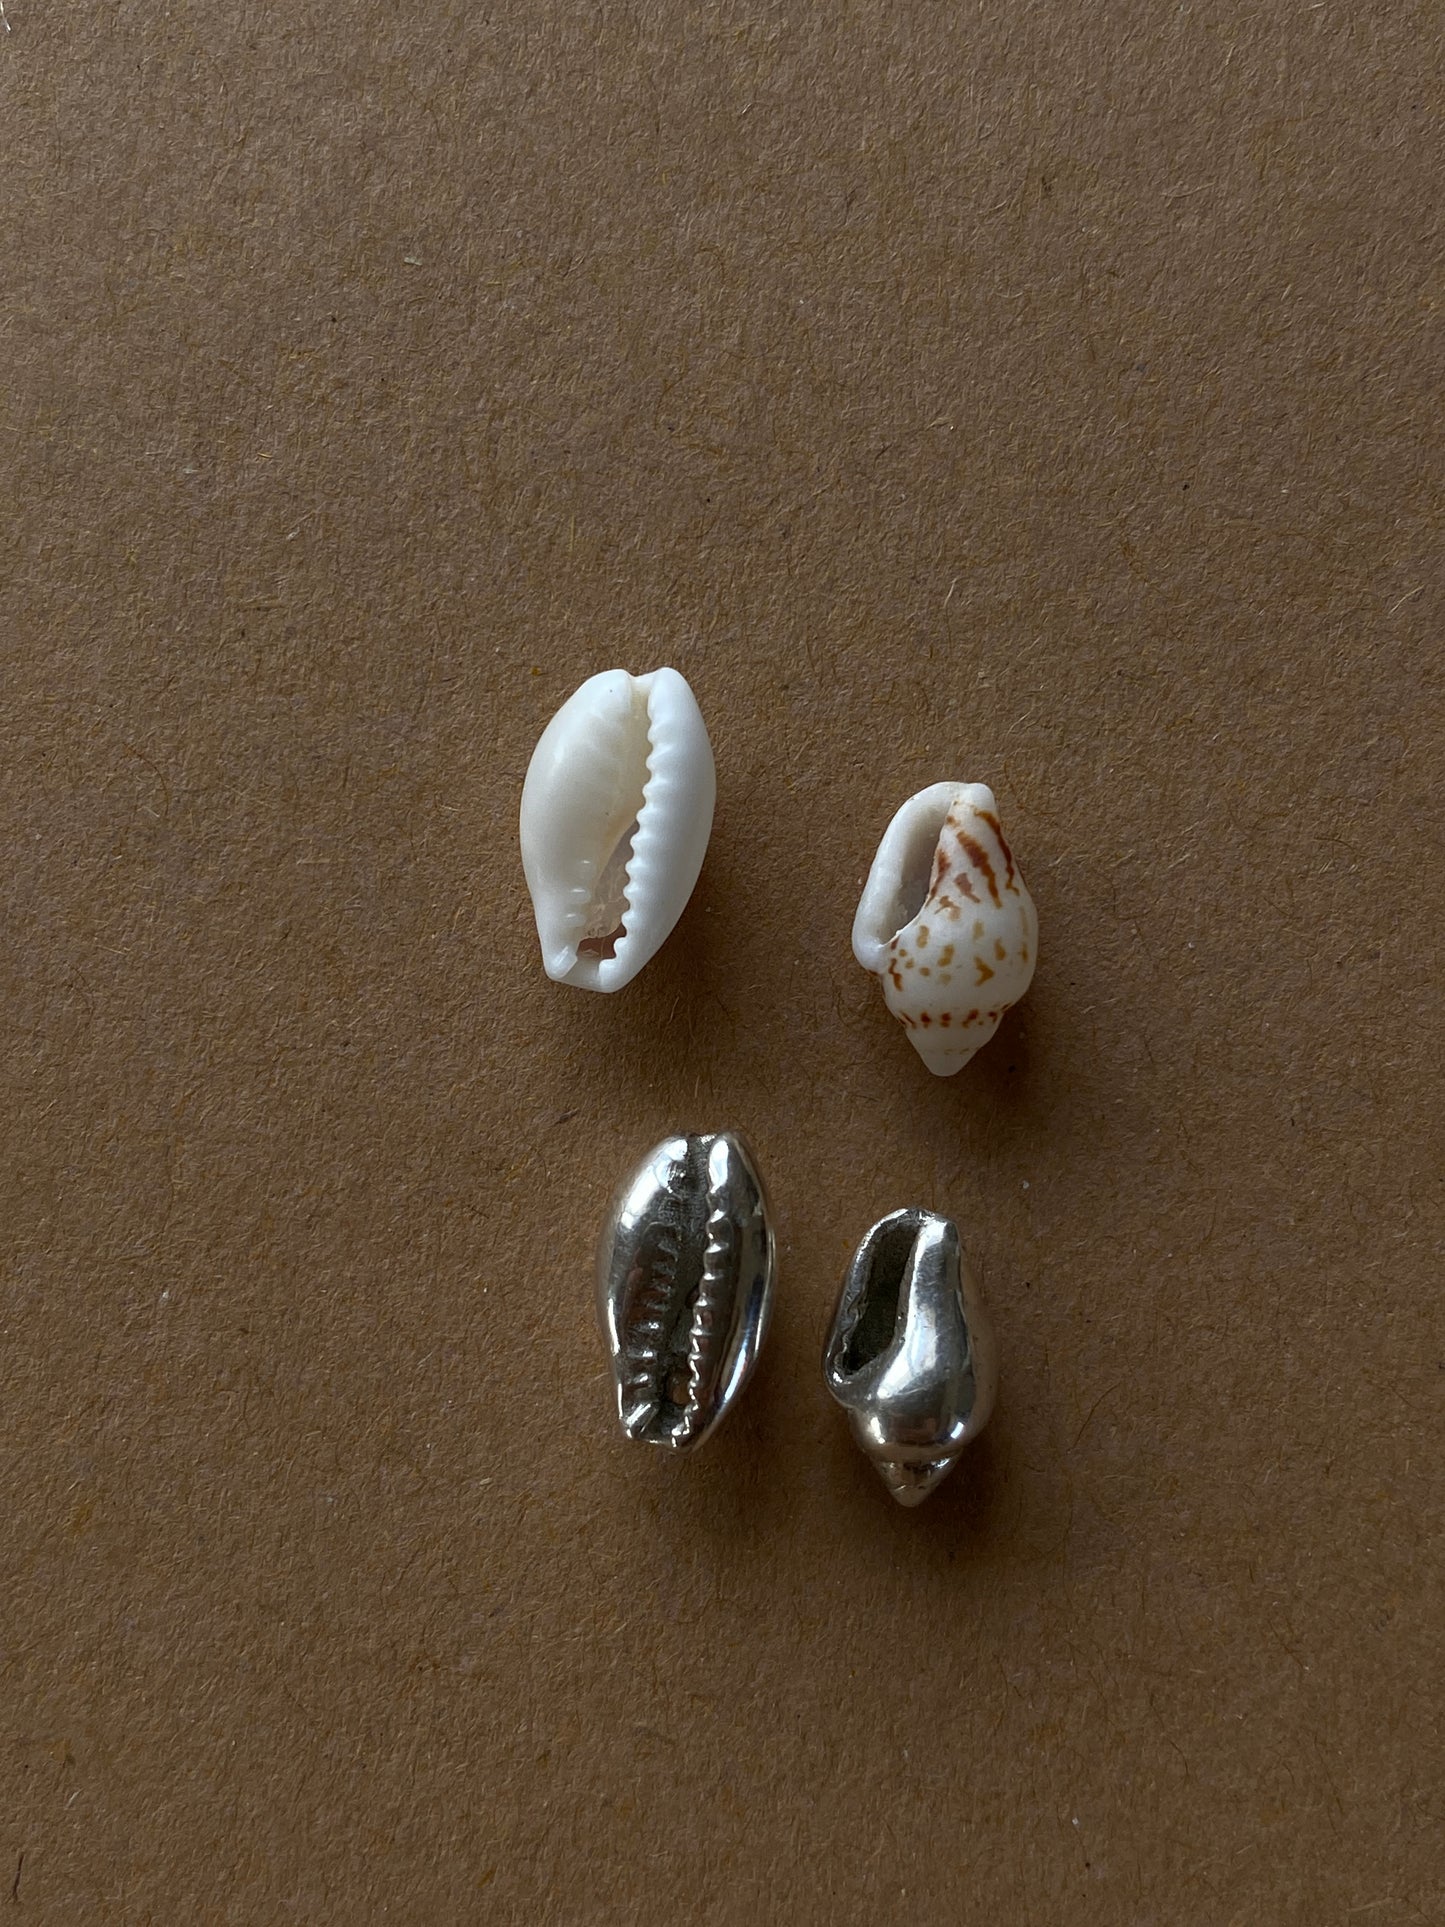 Bali Cori Shell earrings loops in Silver